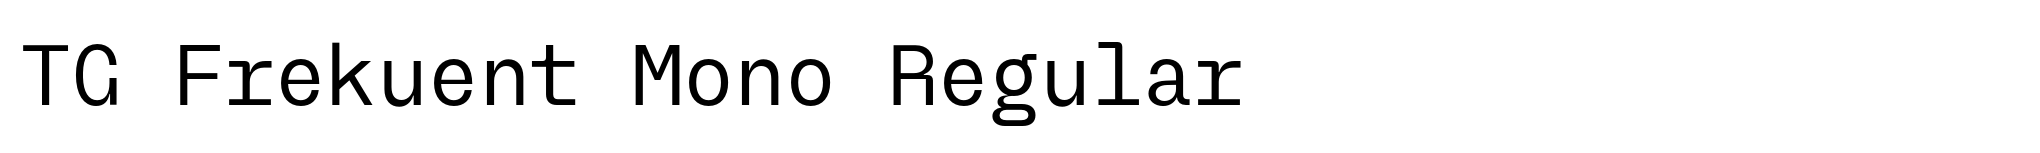 TG Frekuent Mono Regular image